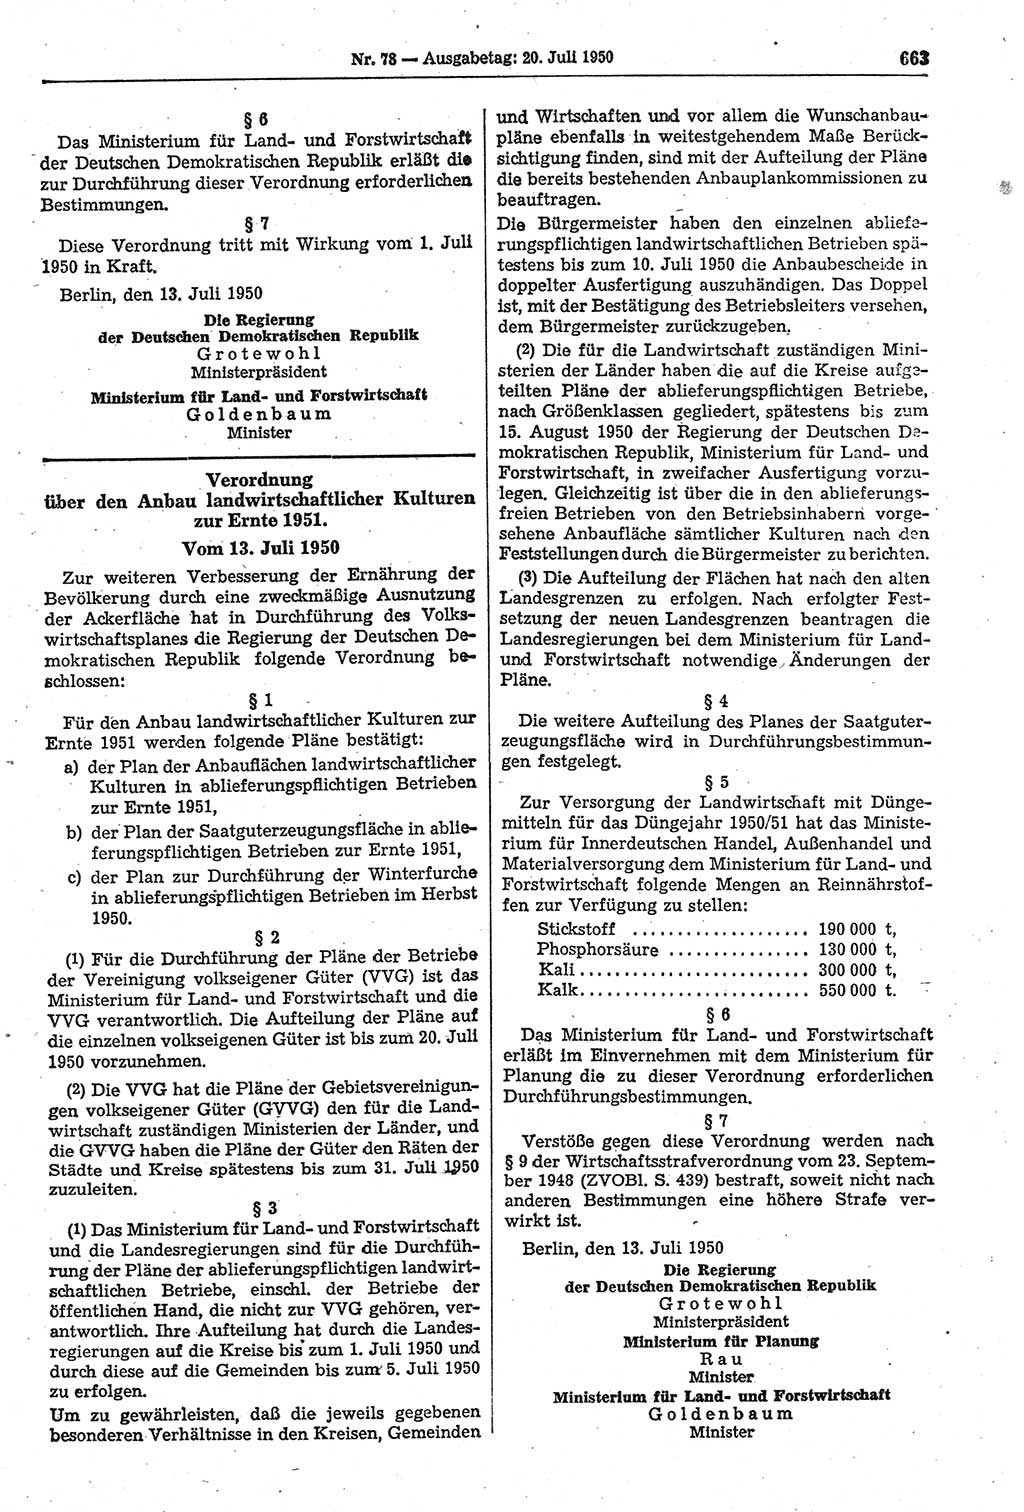 Gesetzblatt (GBl.) der Deutschen Demokratischen Republik (DDR) 1950, Seite 663 (GBl. DDR 1950, S. 663)